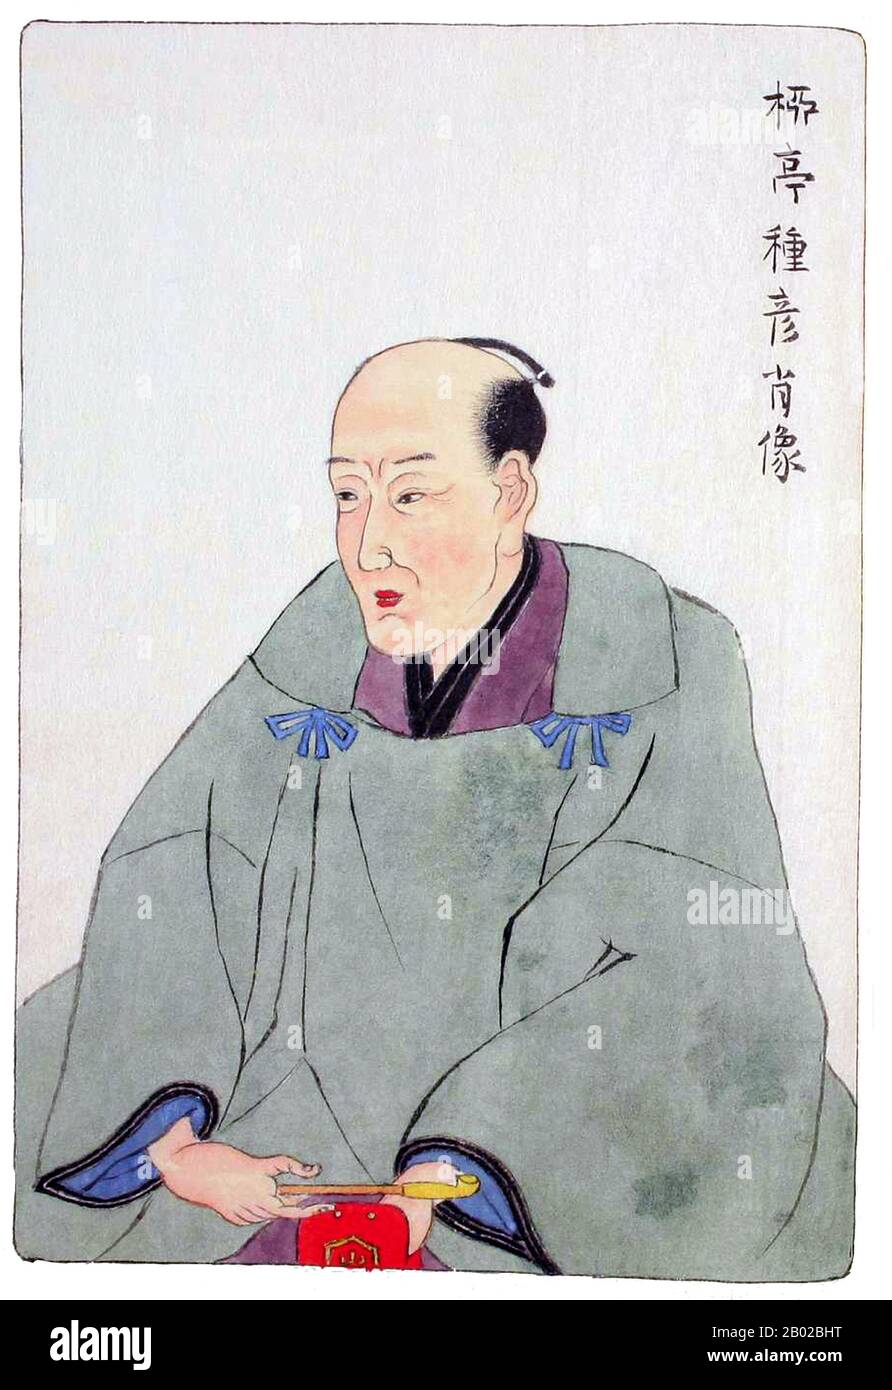 Ryūtei Tanehiko (柳 亭 种 彦? ) (11. Juli 1783 in Edo - 24. August 1842) war eine japanische Schriftstellerin und Literaturfigur. Er wurde in eine Samurai-Familie von niedrigerem Rang geboren und wuchs in einer relativ bescheidenen Umgebung auf. Seine literarische Karriere begann er als Gedichtschreiber Kyōka nach Ota Nampo Modell. Sein Lehrer war Karagoromo Kisshu und nach dessen Tod im Jahr 1802 Shikatsube Magao. 1805 traf er Masamochi Ishikawa, der ebenfalls zu seinen Mentoren gehörte. Tanehiko veröffentlichte im Jahr 1807 die erste einer Reihe von Romanzen, was zu literarischem Erfolg bei seinen Altersgenossen führte. Seine literarische Berühmtheit beruht zum großen Teil auf der Illusion Stockfoto